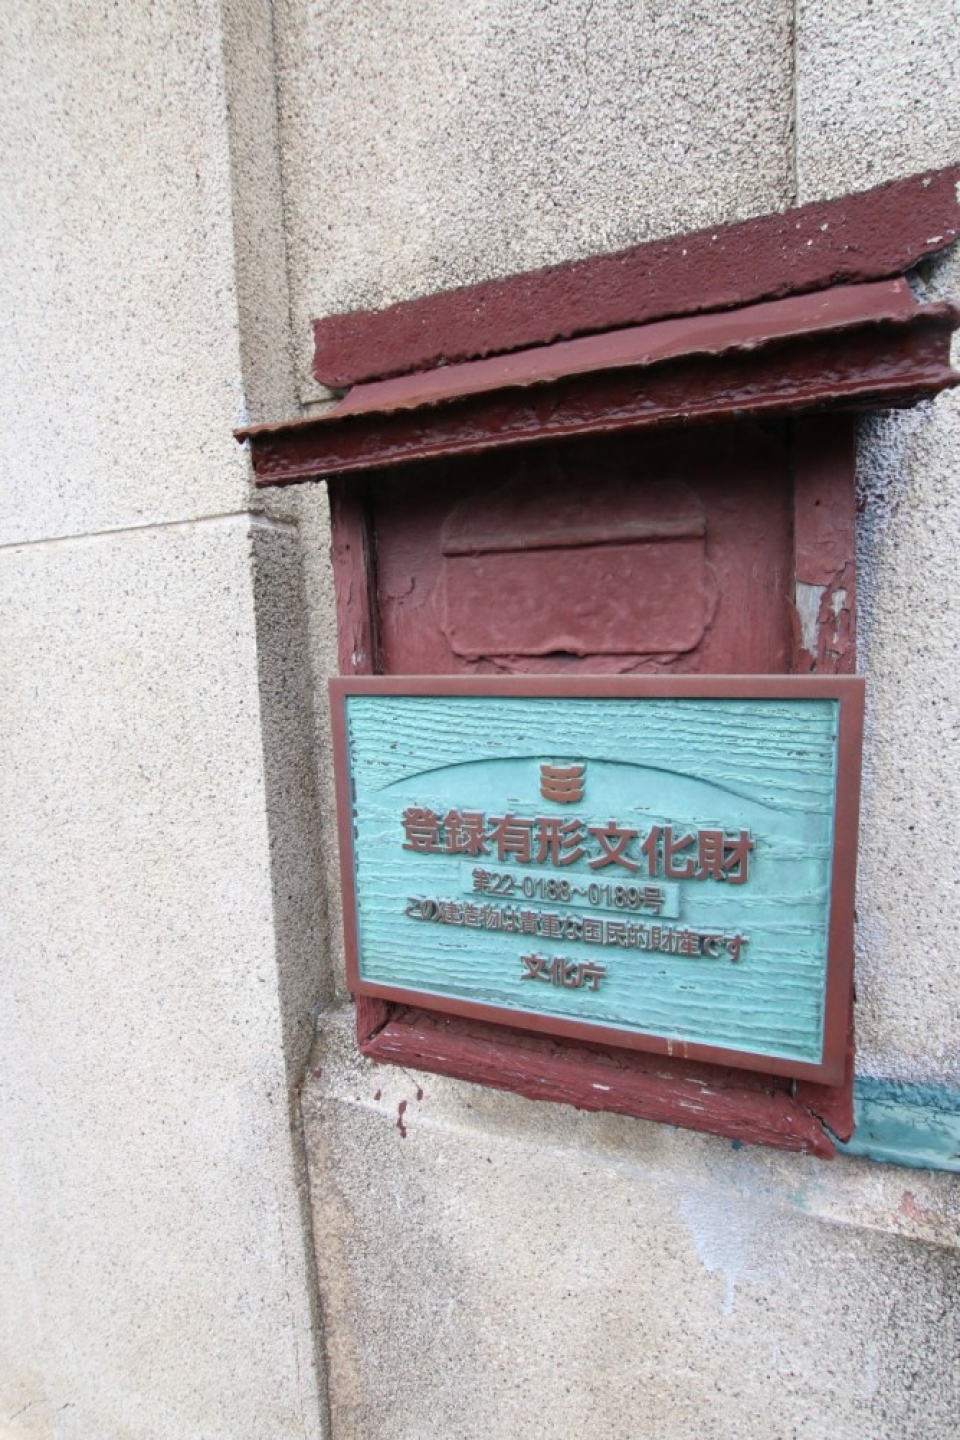 登録有形文化財の称号が建物正面に貼られている。